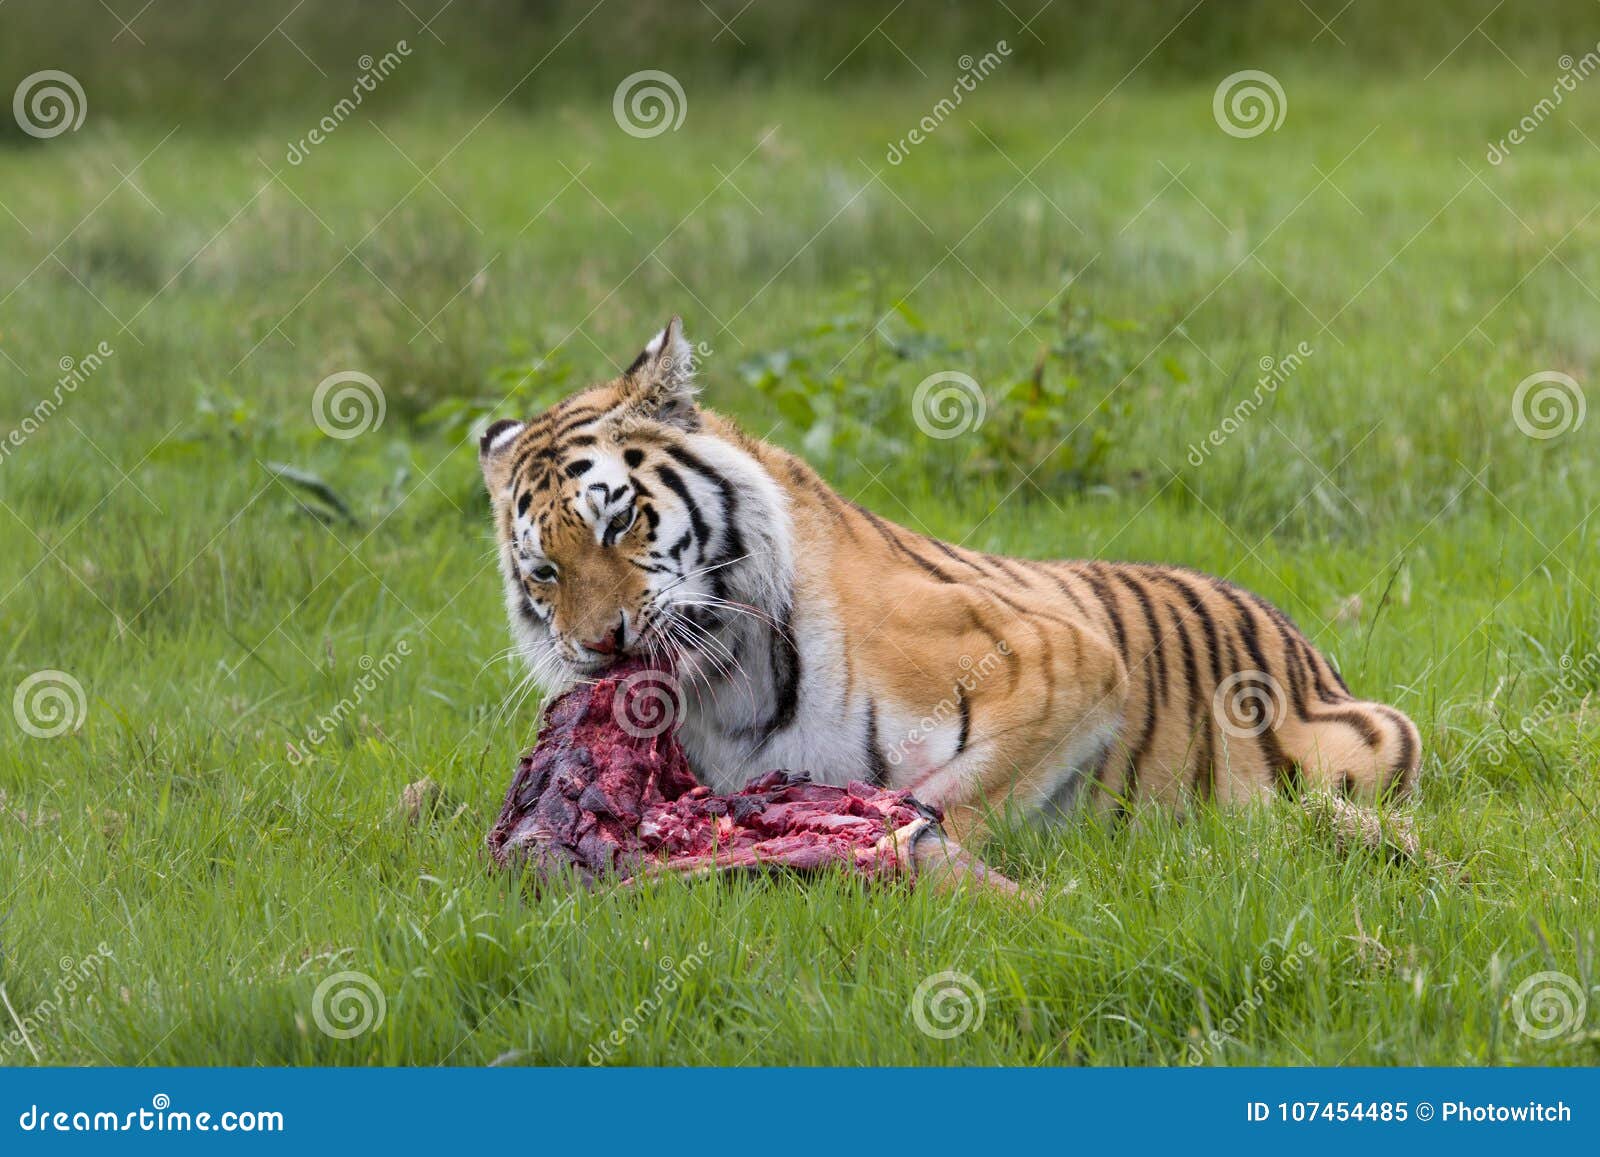 amur tiger with prey